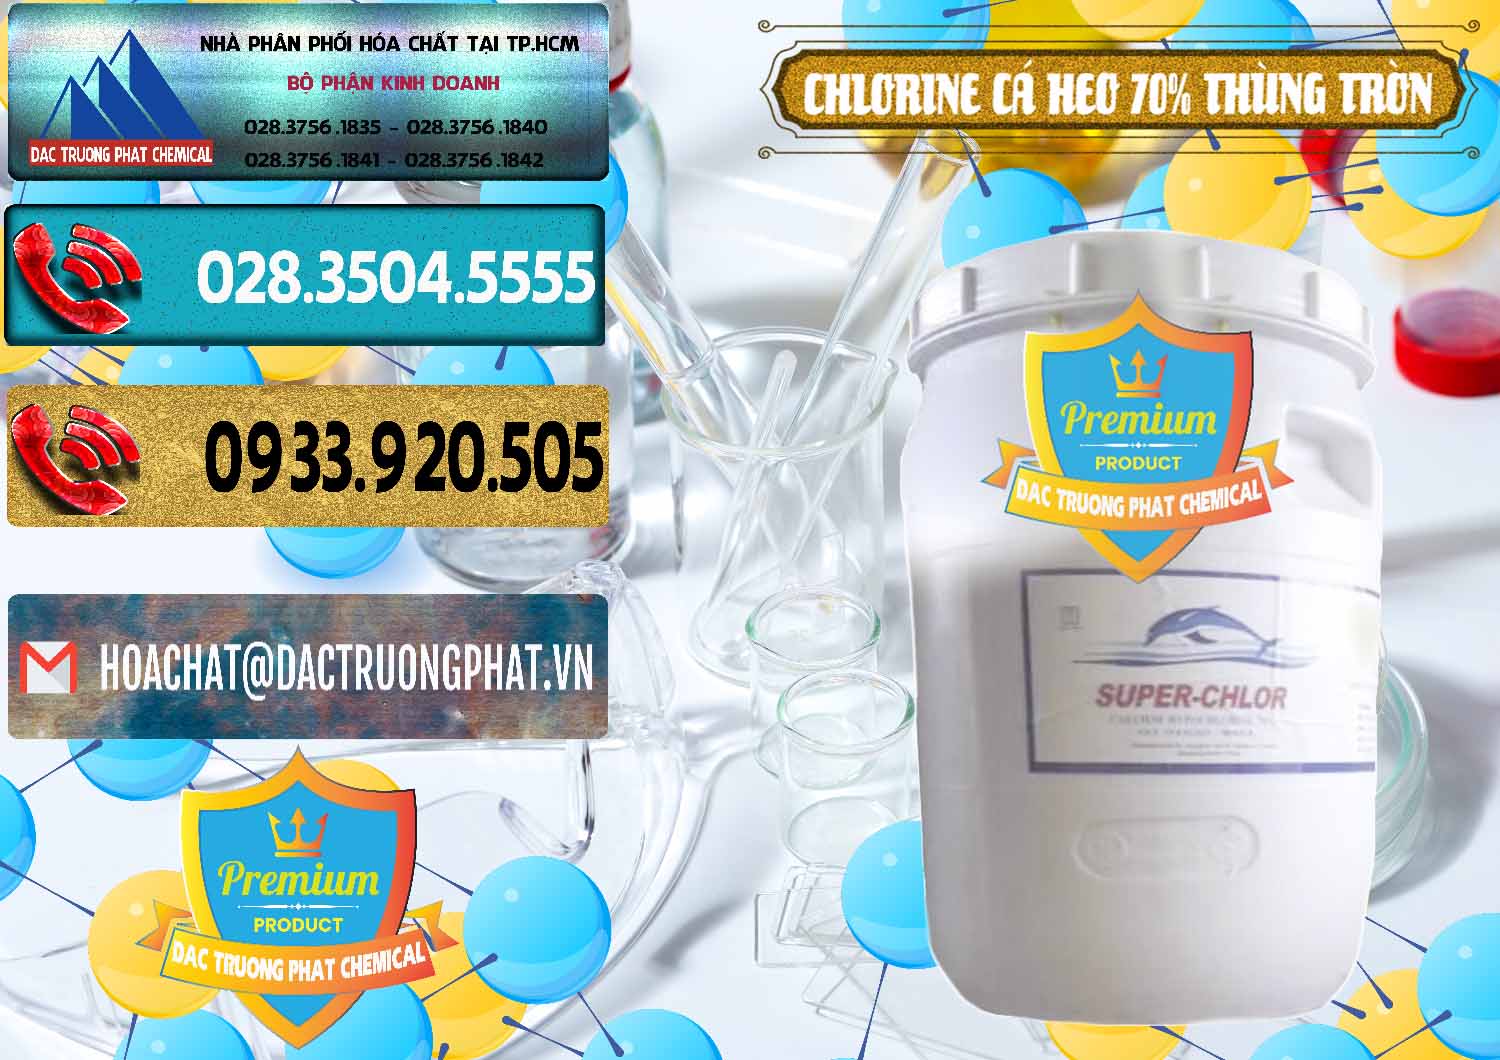 Cty chuyên nhập khẩu & bán Clorin - Chlorine Cá Heo 70% Super Chlor Thùng Tròn Nắp Trắng Trung Quốc China - 0239 - Nơi phân phối _ nhập khẩu hóa chất tại TP.HCM - hoachatdetnhuom.com